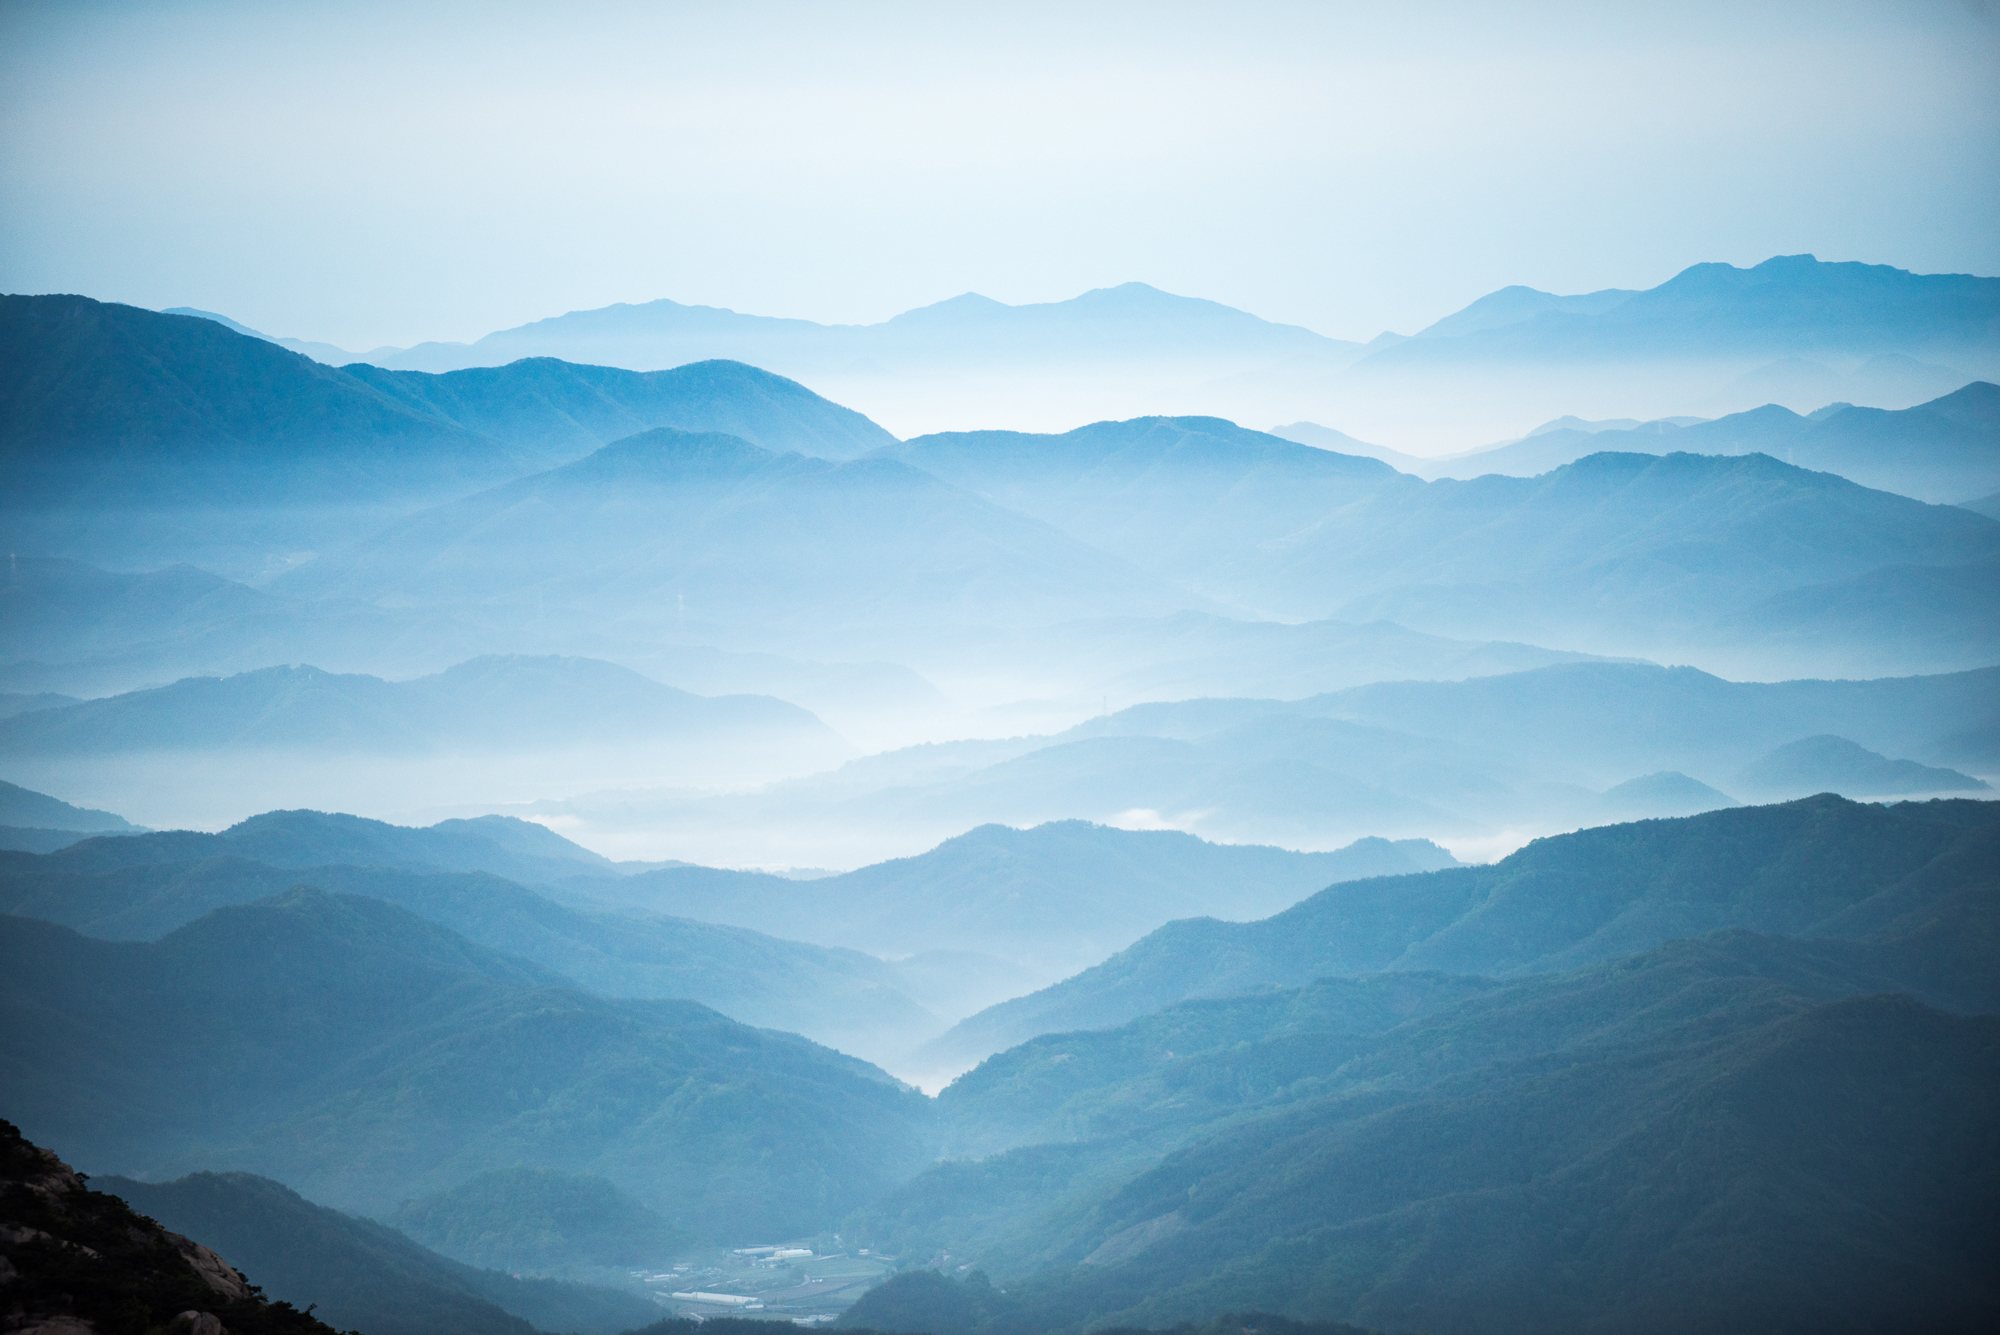 dawn-hwangmasan-mountain-with-sea-clouds